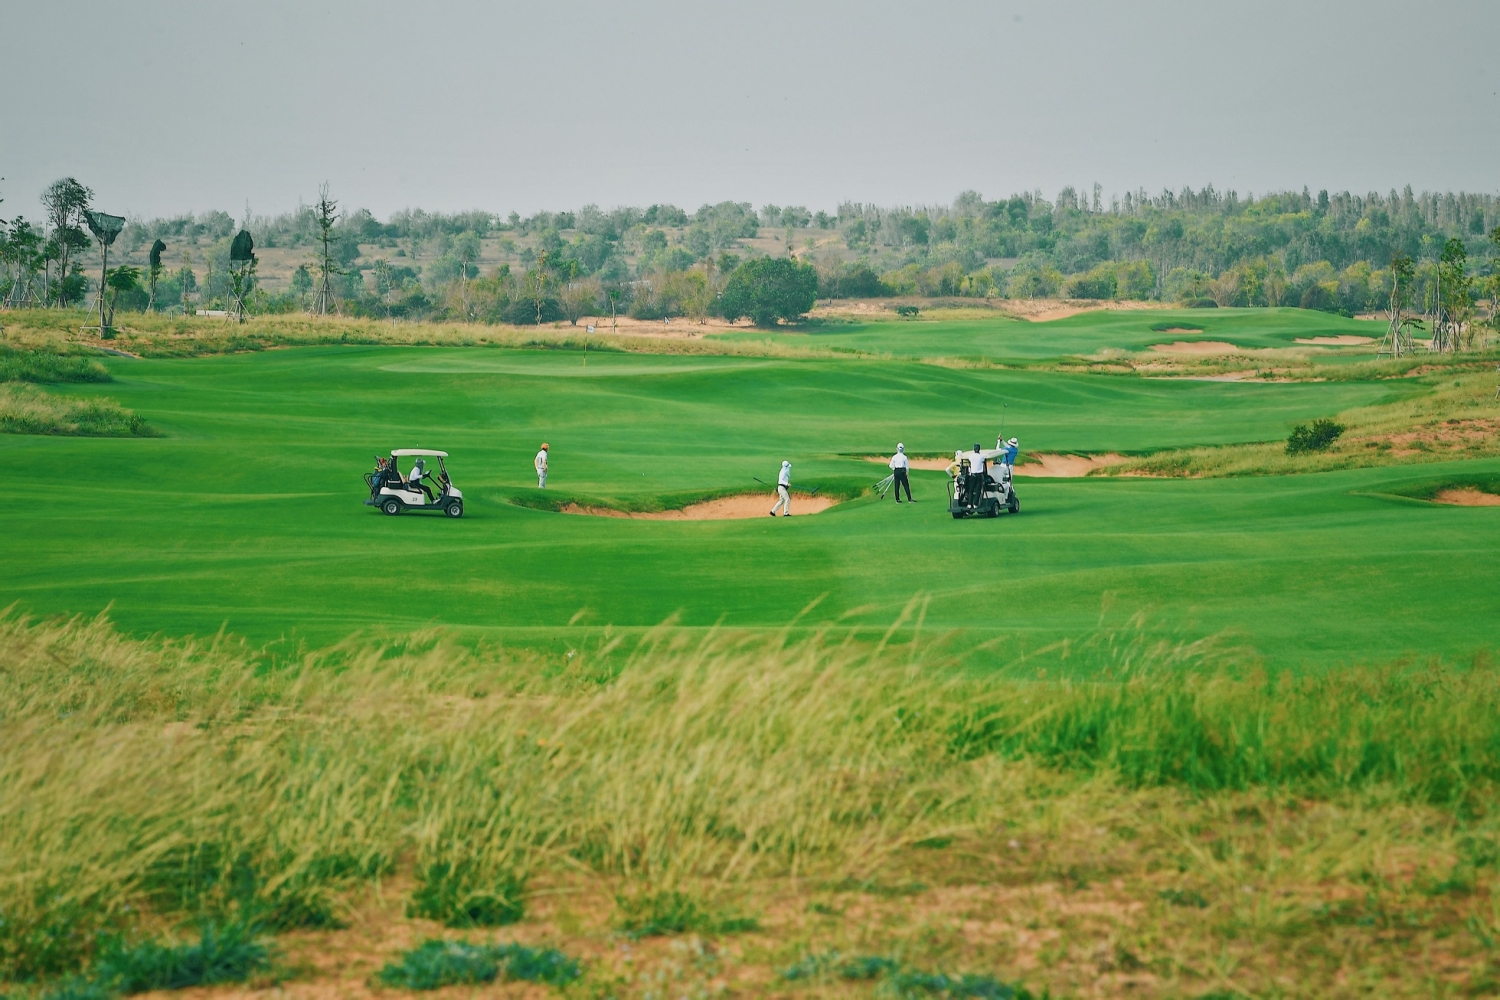 ân golf PGA Ocean 18 hố độc quyền tại NovaWorld Phan Thiet đã đưa vào vận hành từ tháng 04/2021.